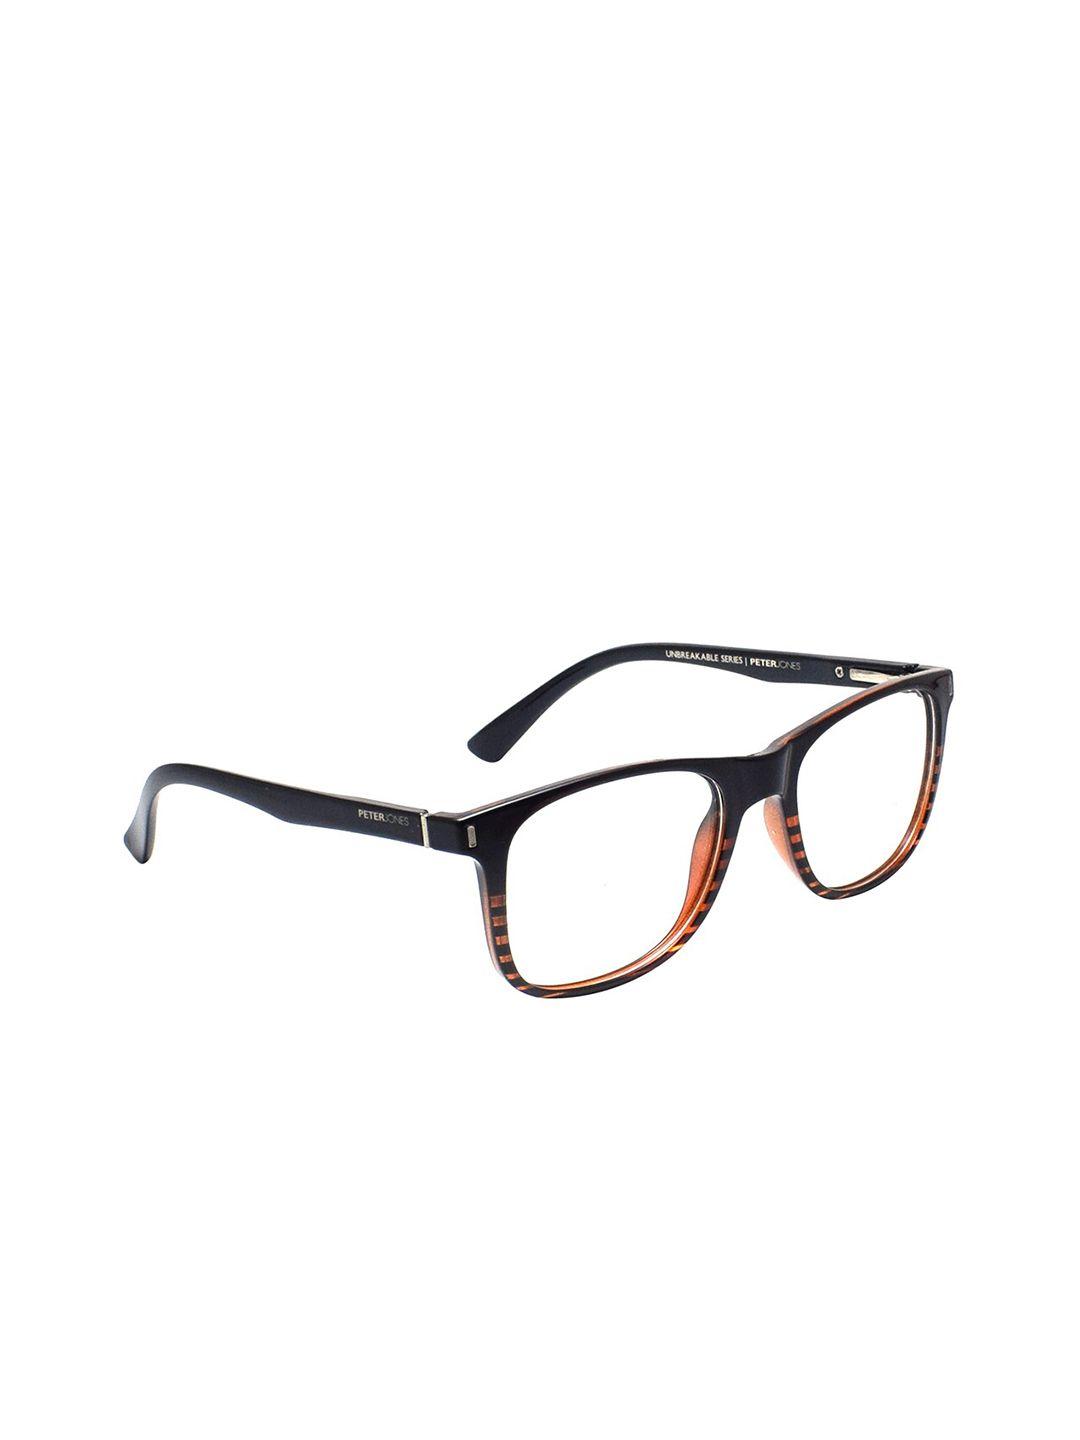 peter jones eyewear unisex black & orange striped full rim square frames-x108og-orange